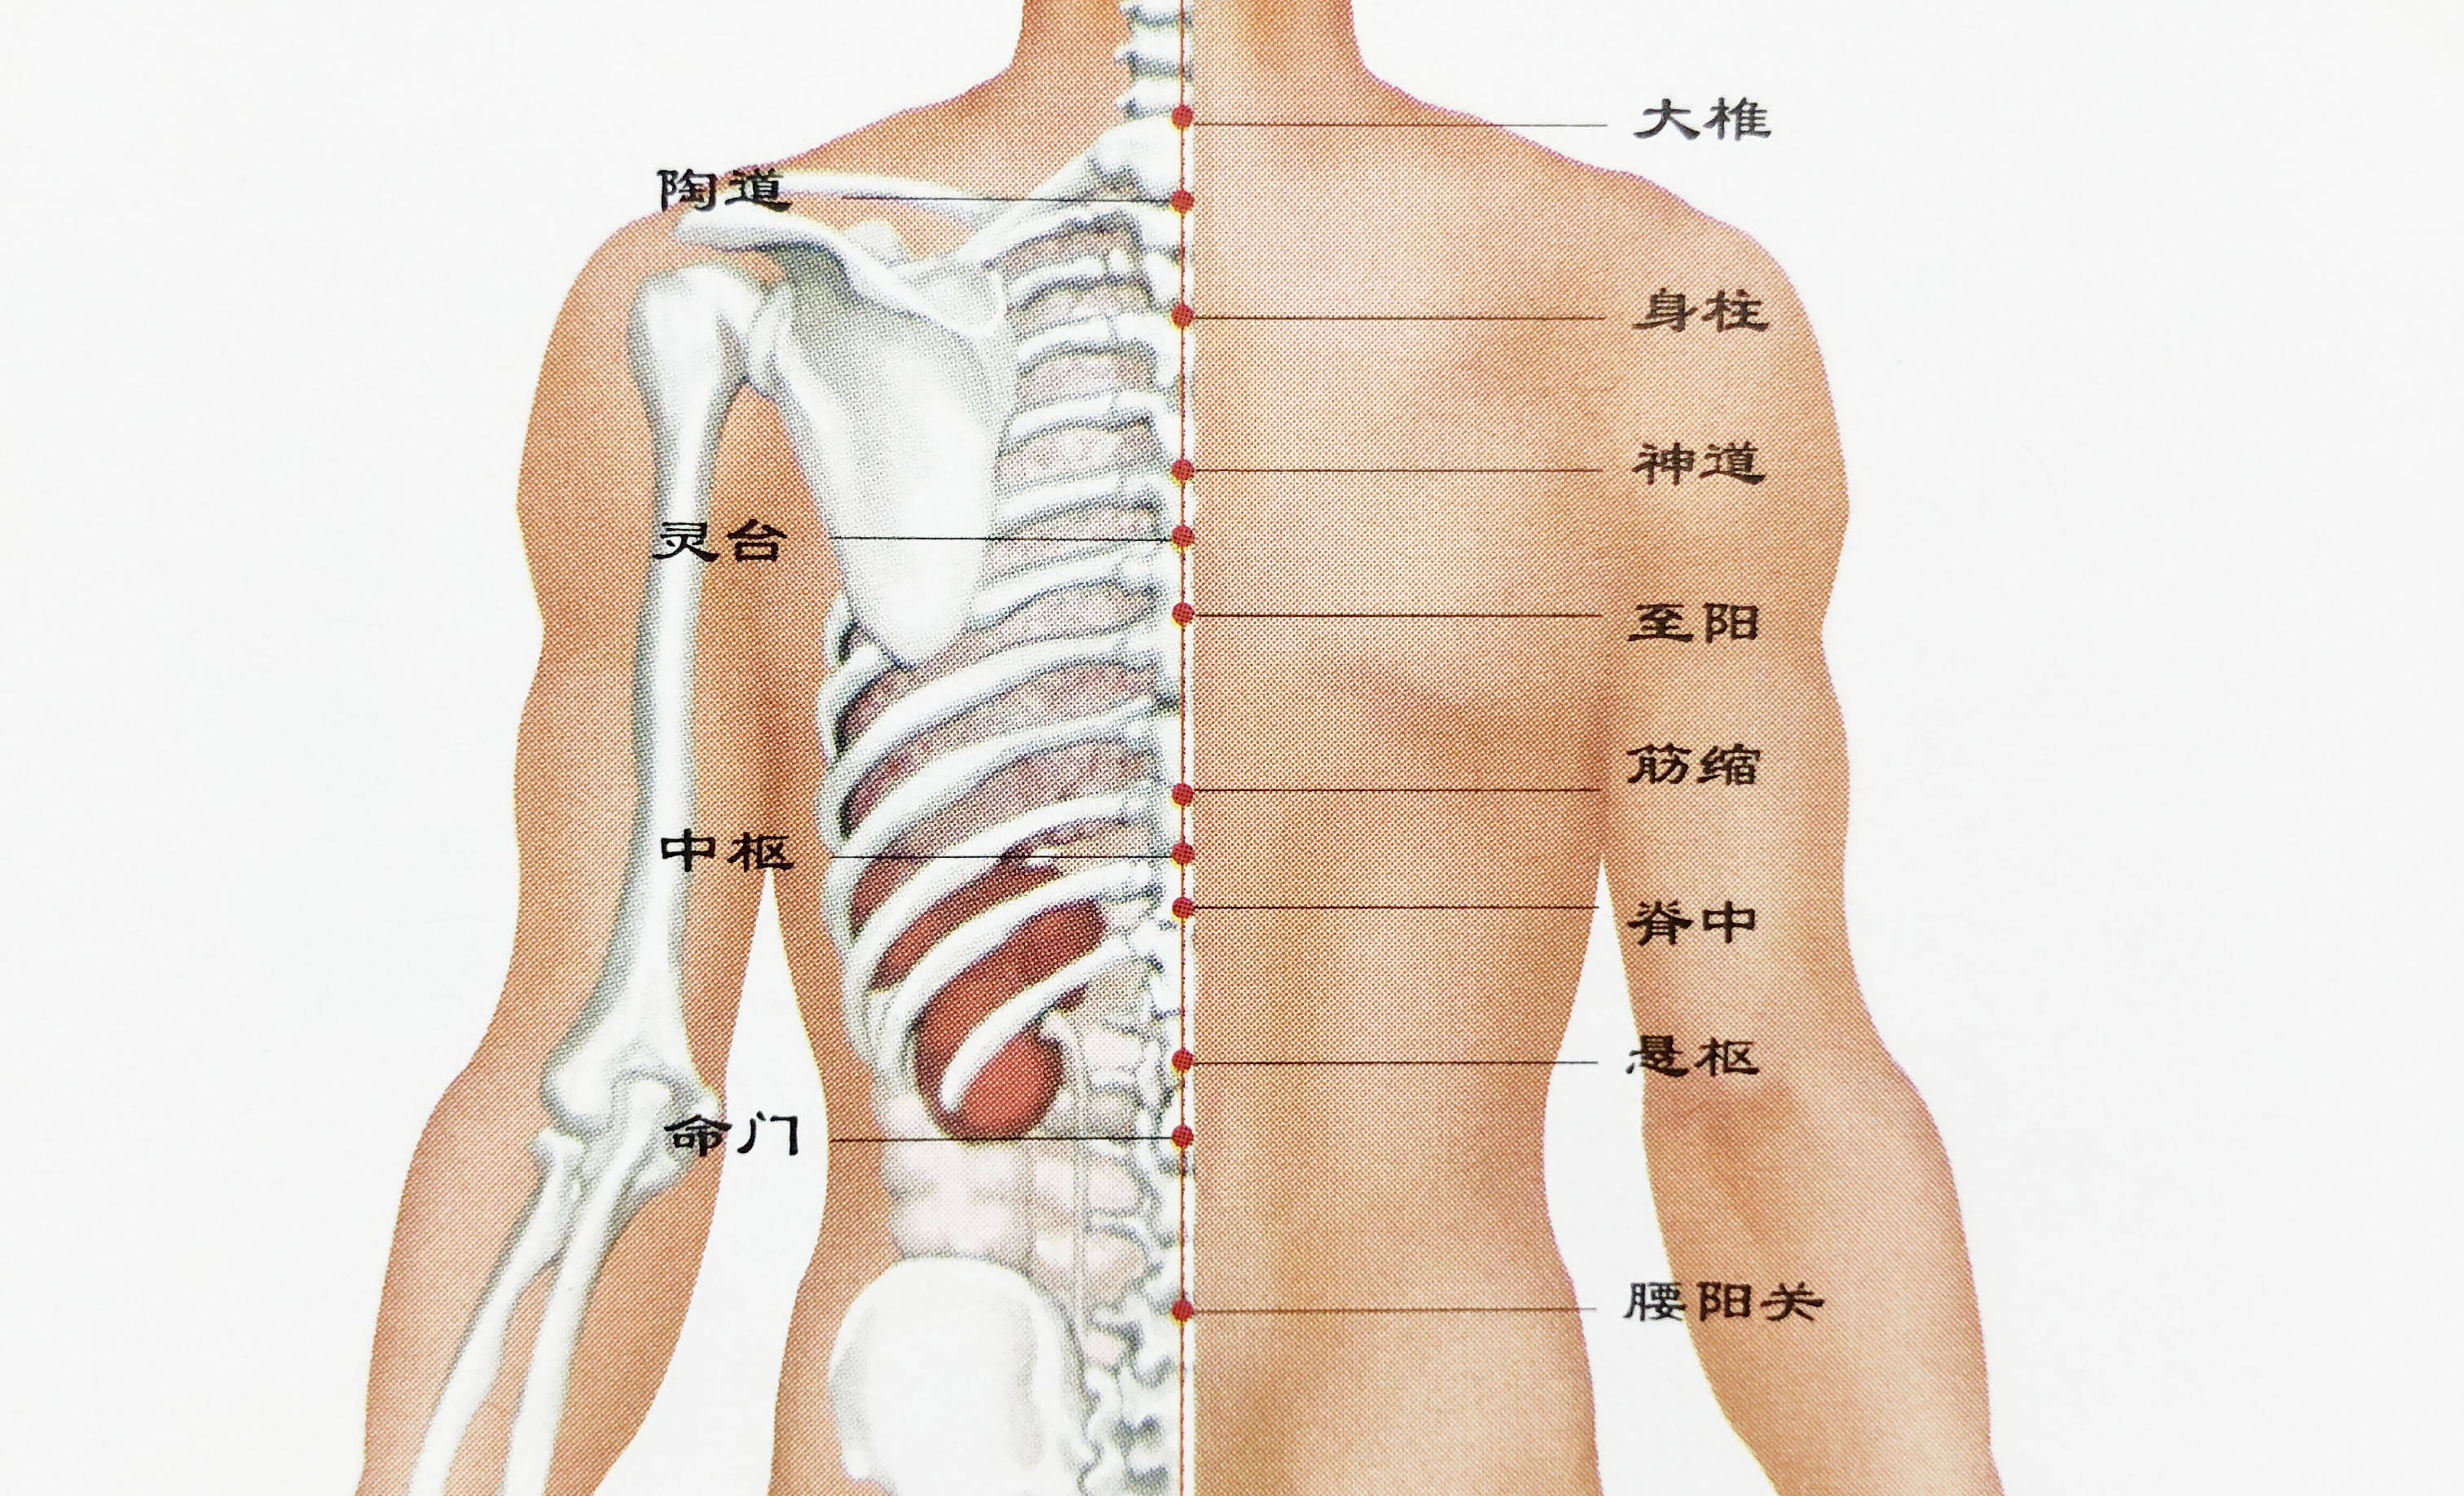 人体背部三焦位置图图片